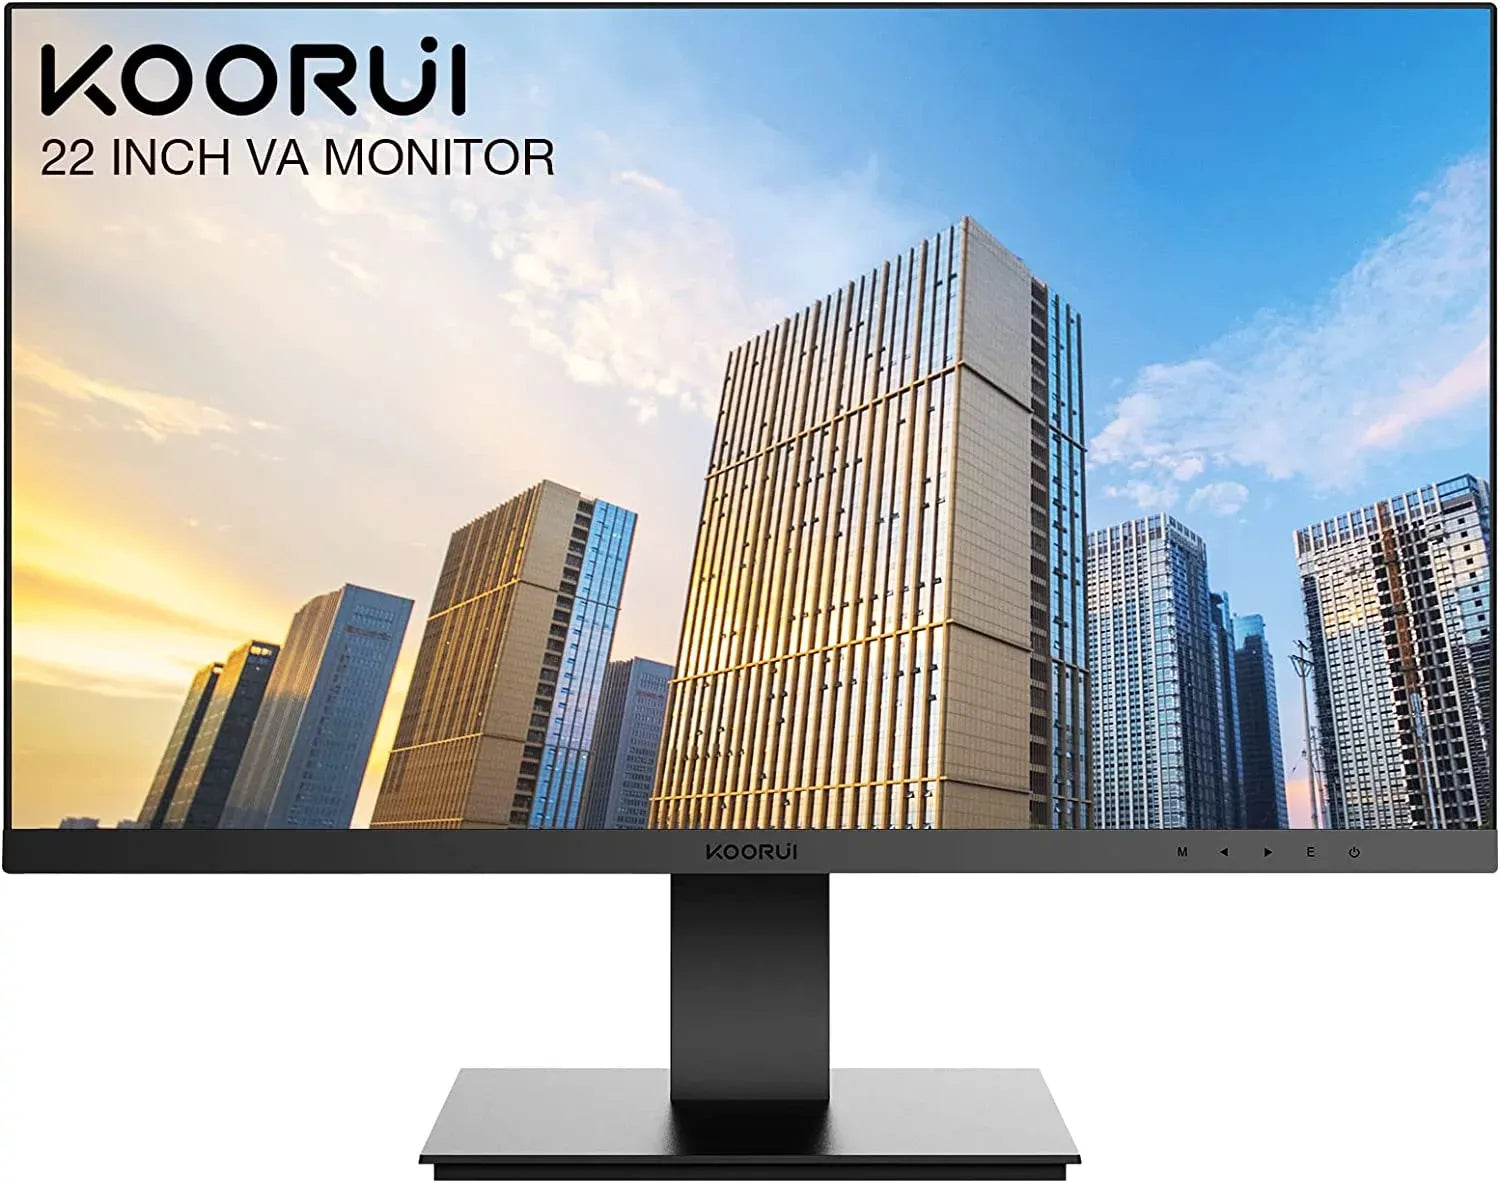 Koorui Monitors